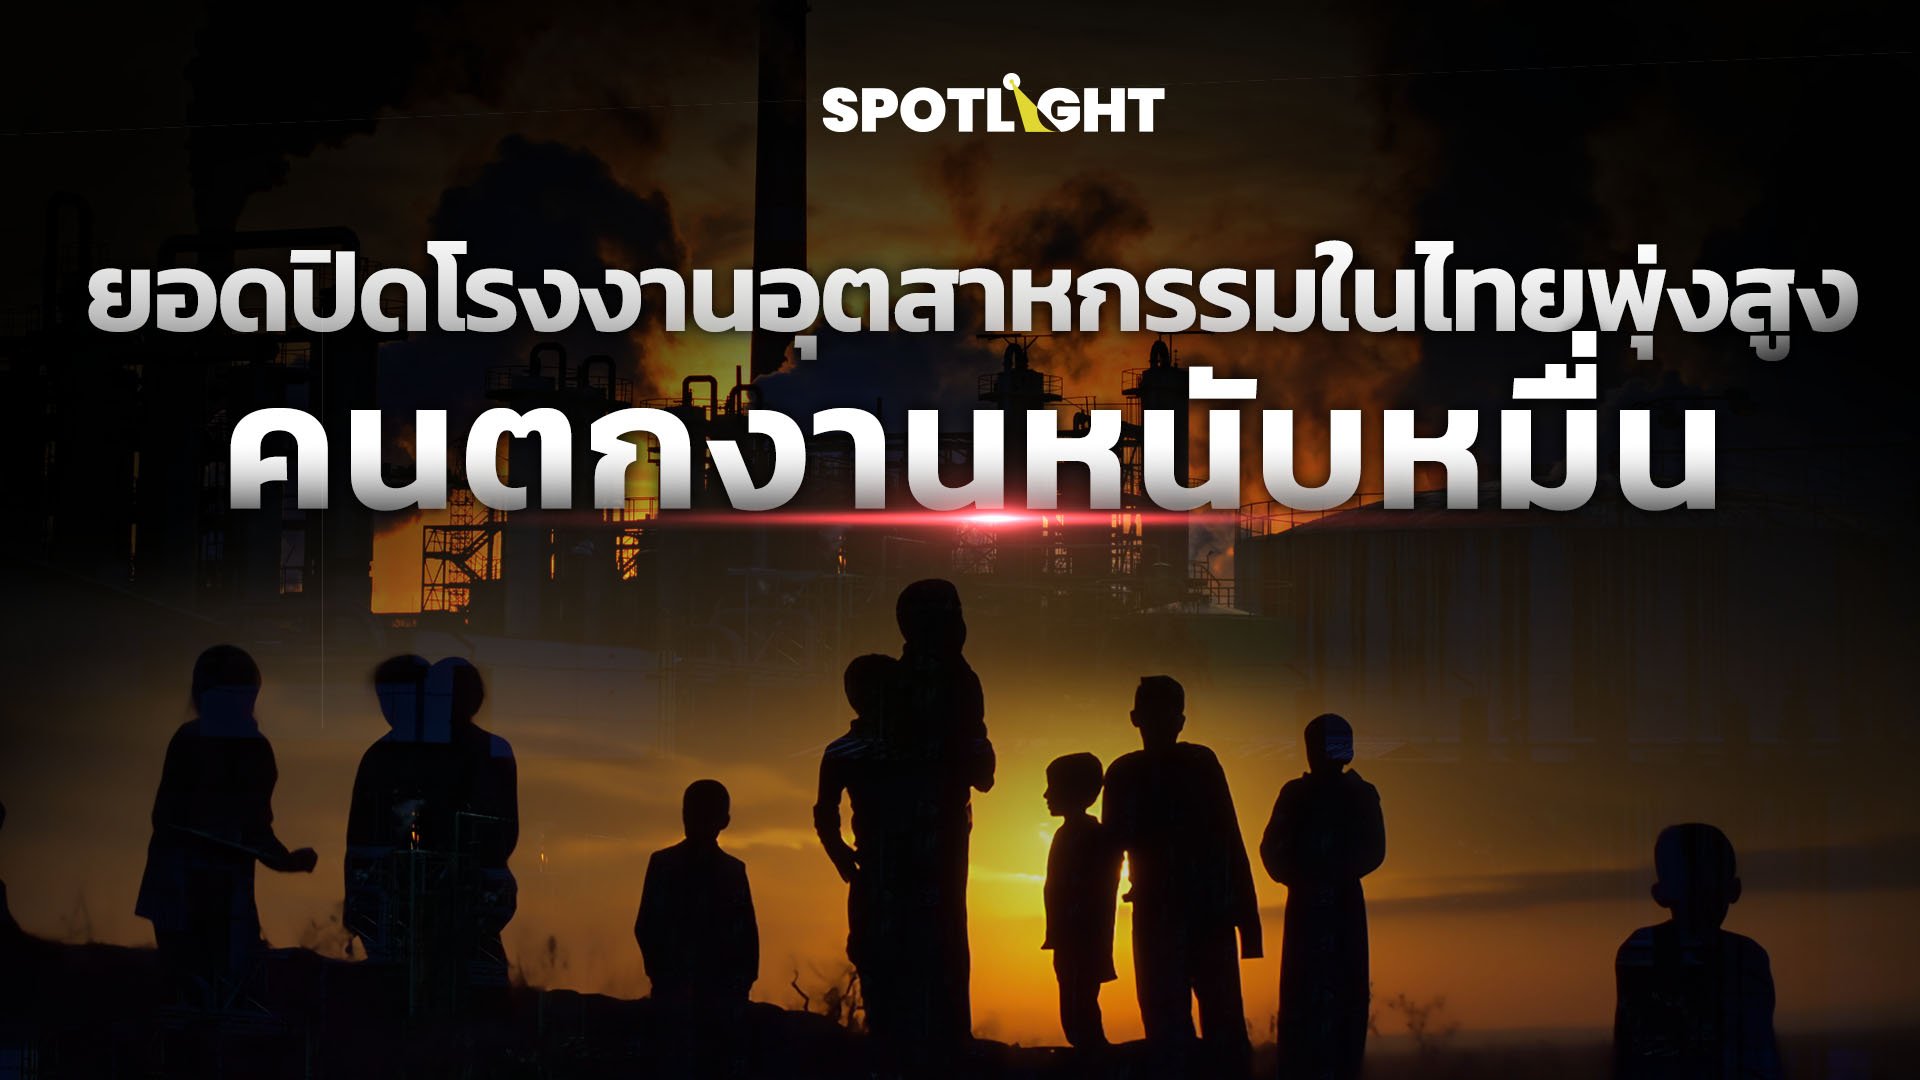 ยอดปิดโรงงานอุตสาหกรรมในไทยพุ่งสูง คนตกงานหนับหมื่น | Spotlight | 20 มิ.ย. 67 | AMARIN TVHD34